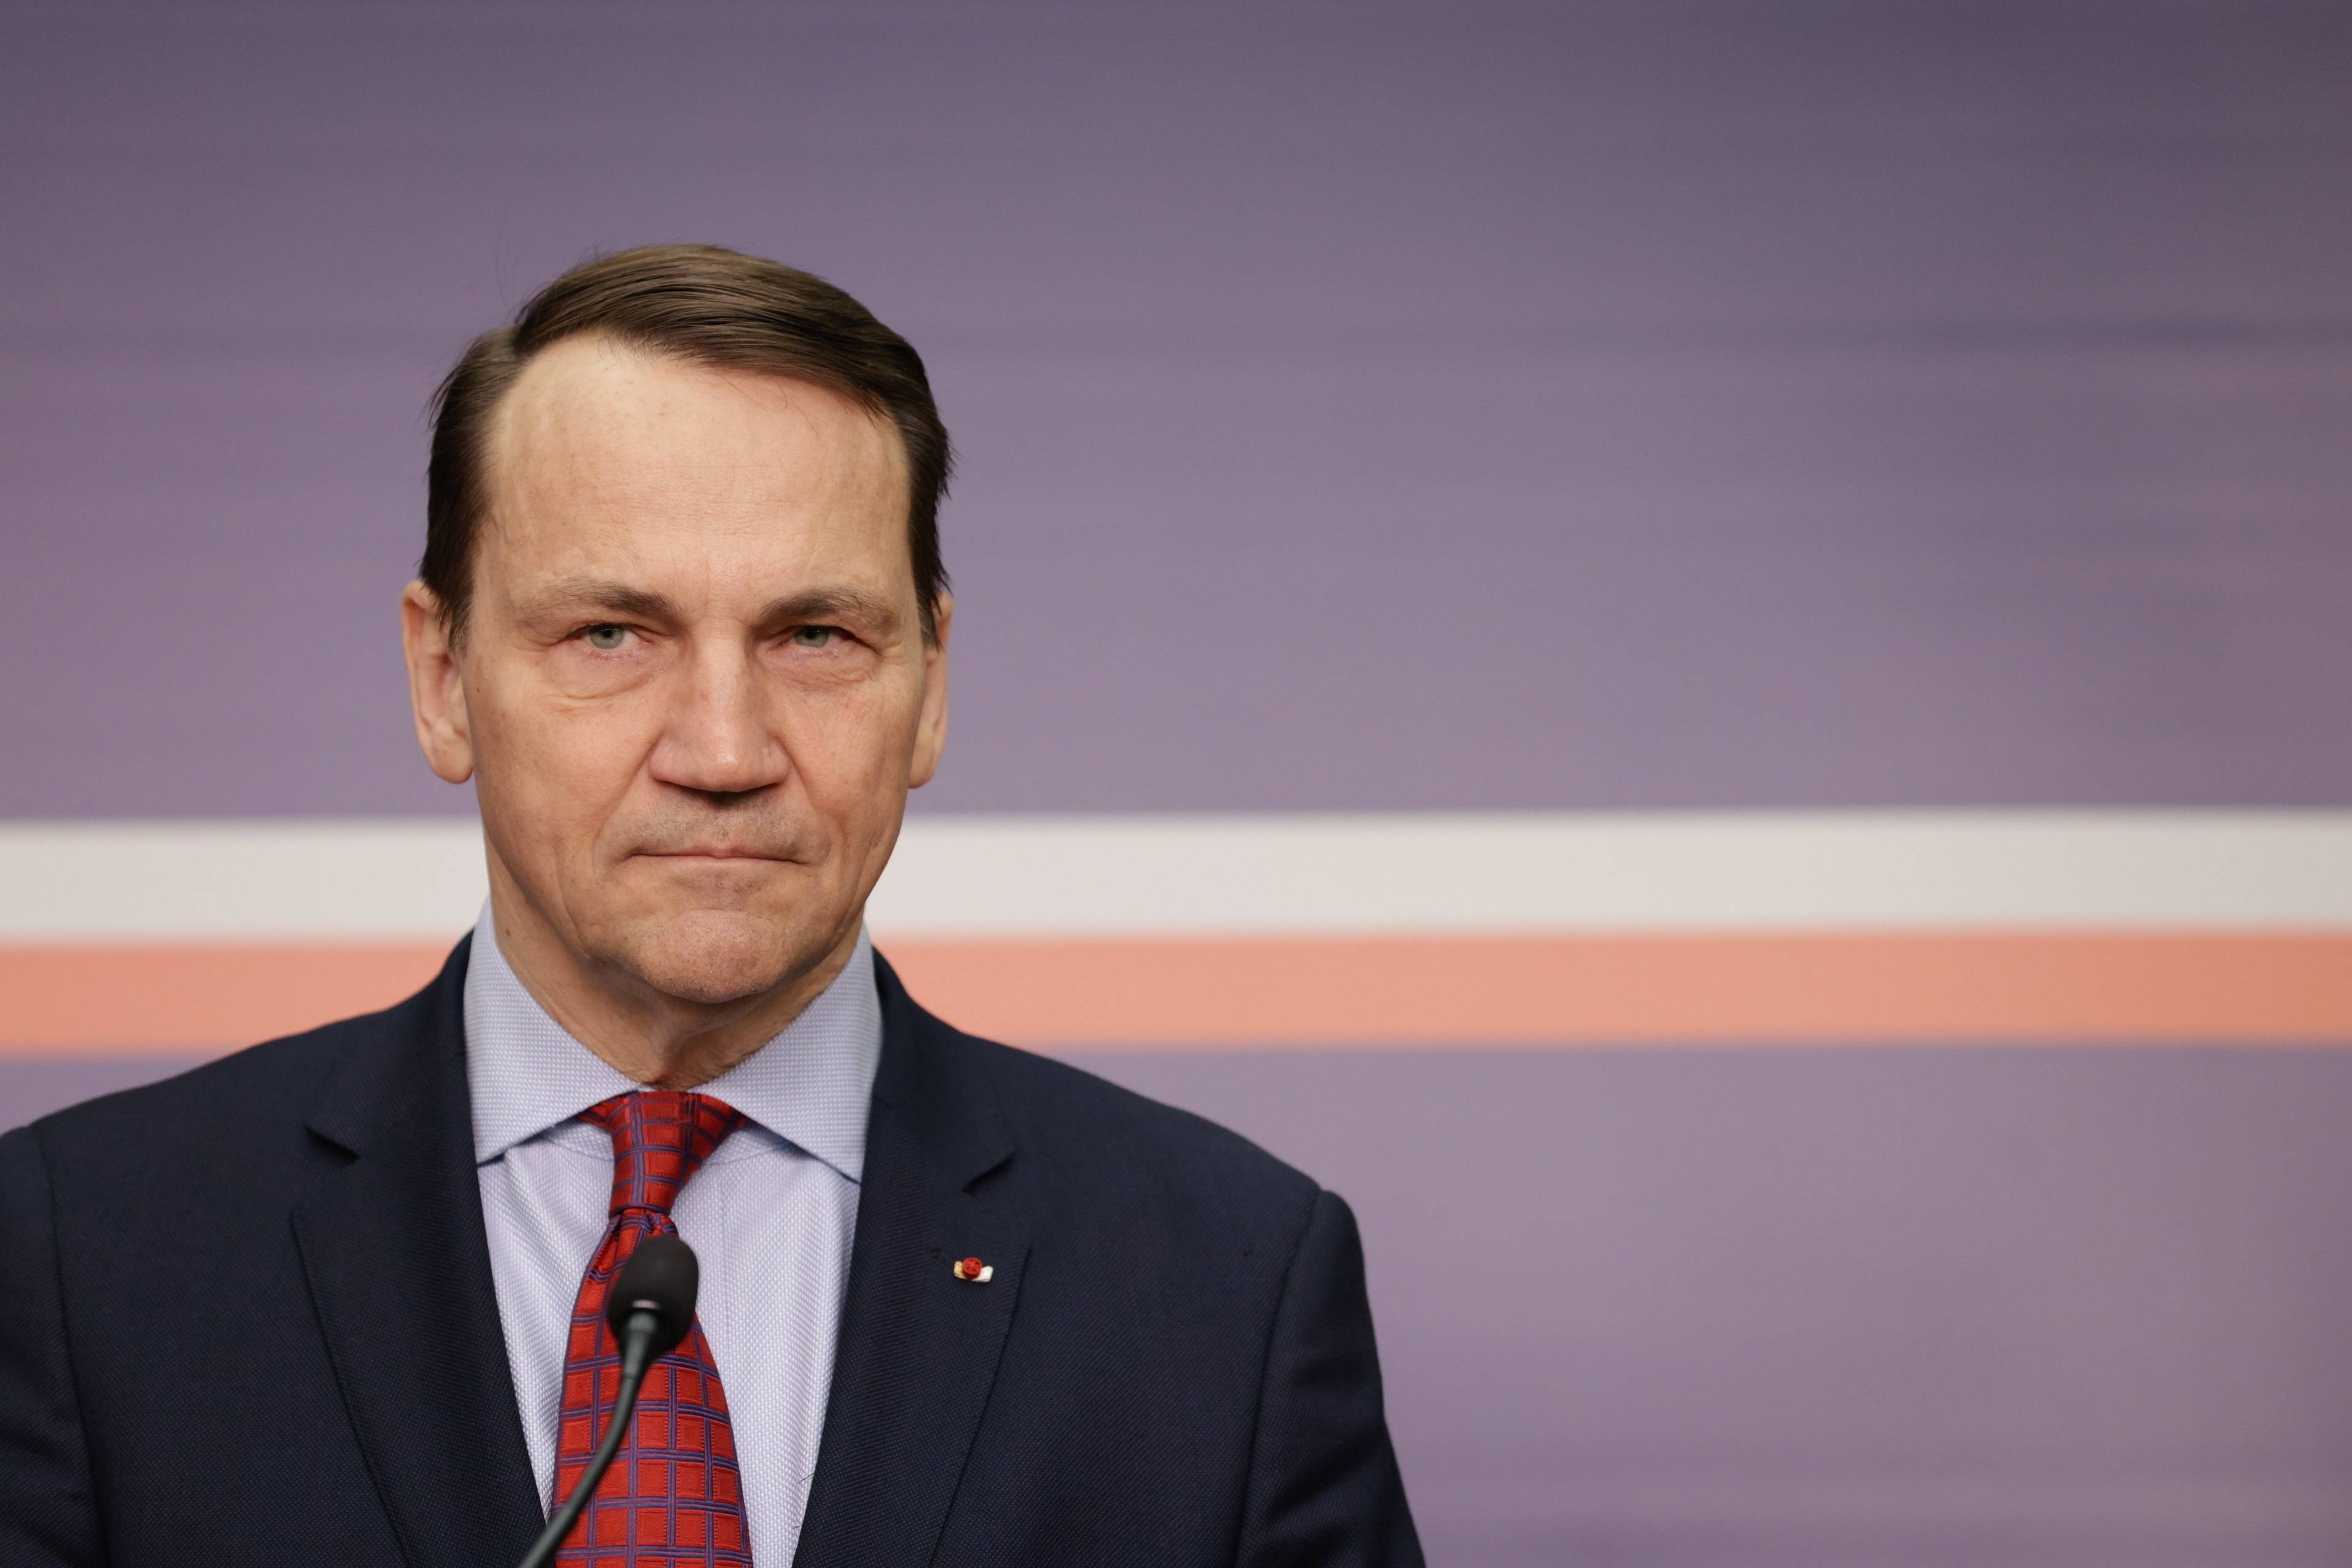 Szef polskiej dyplomacji Radosław Sikorski na tle ciemnoniebieskiej ściany z biało-czerwonym paskiem